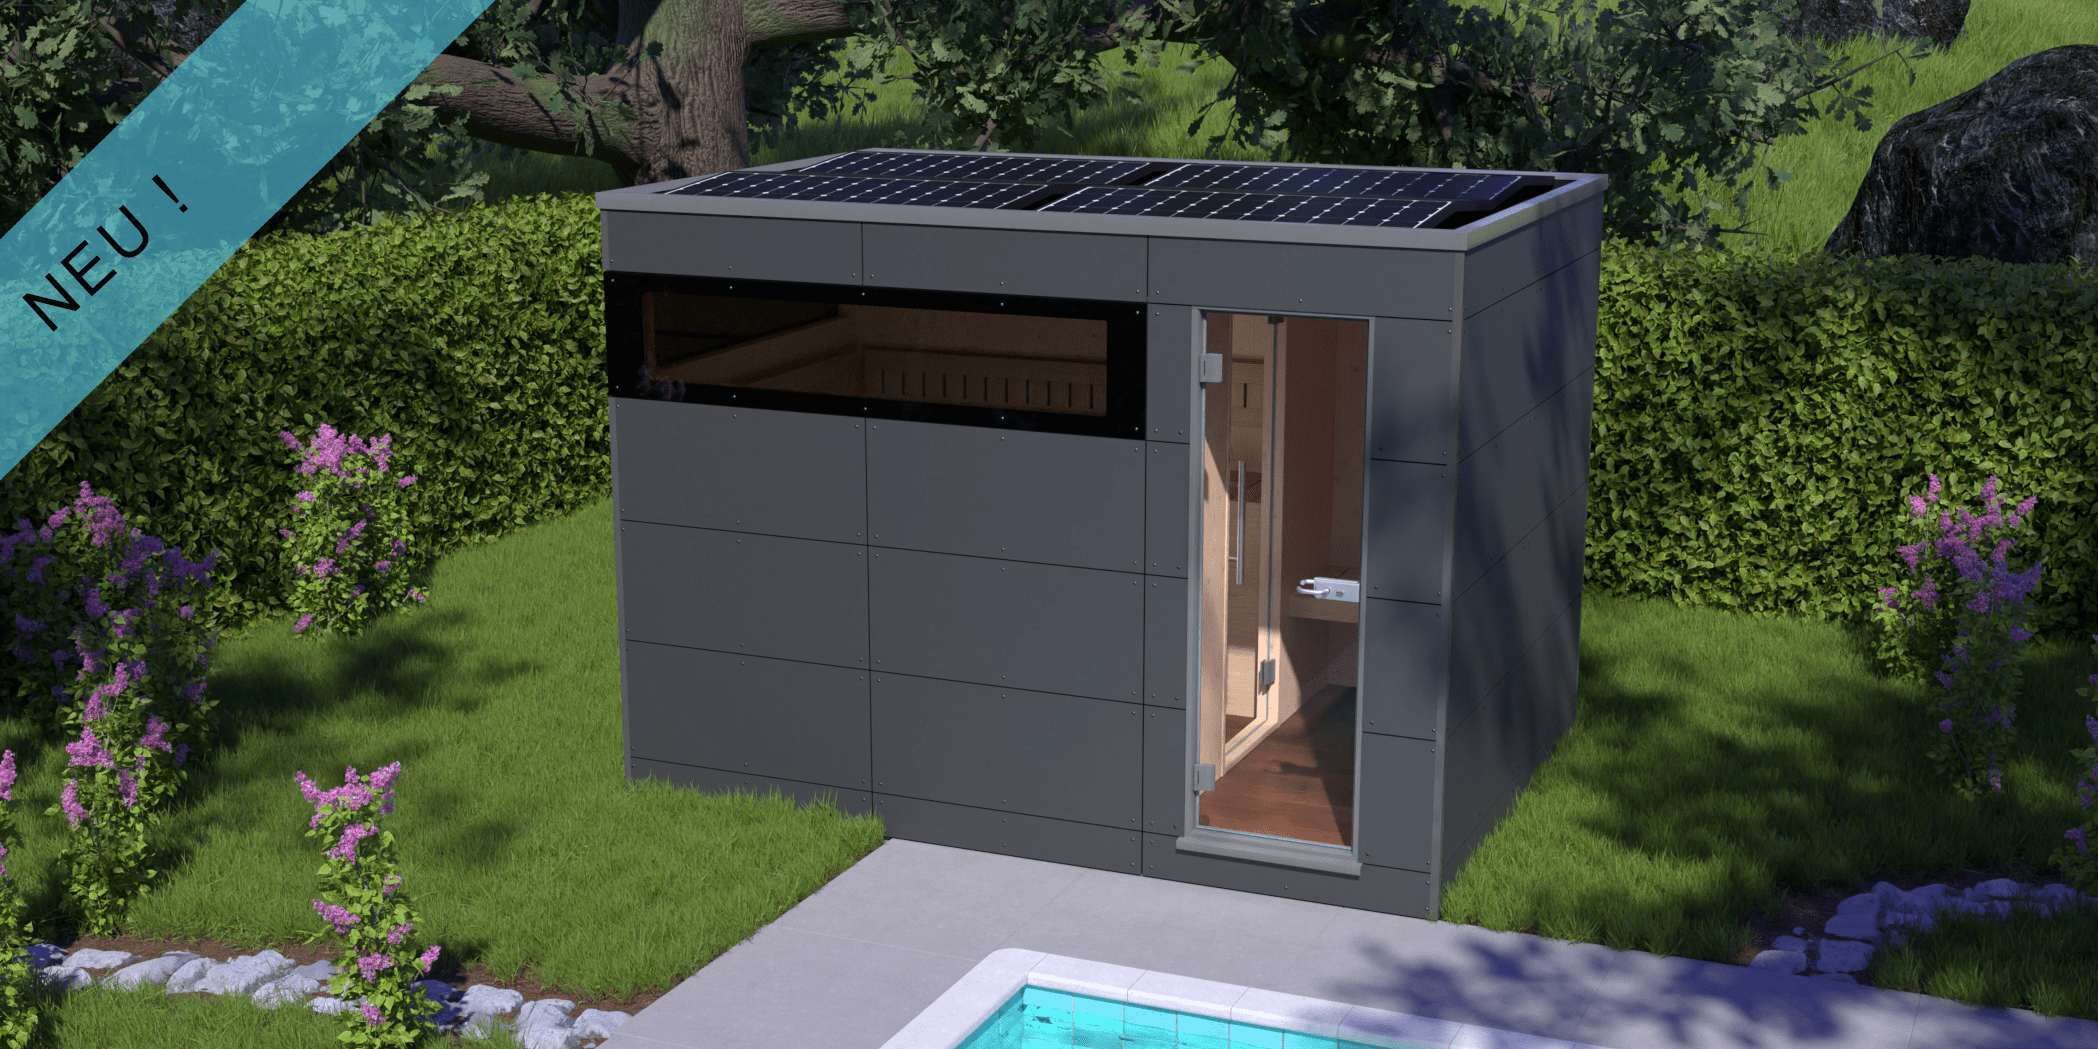 Energiesparsauna mit Solarpaneelen in einem Garten, davor ein Pool